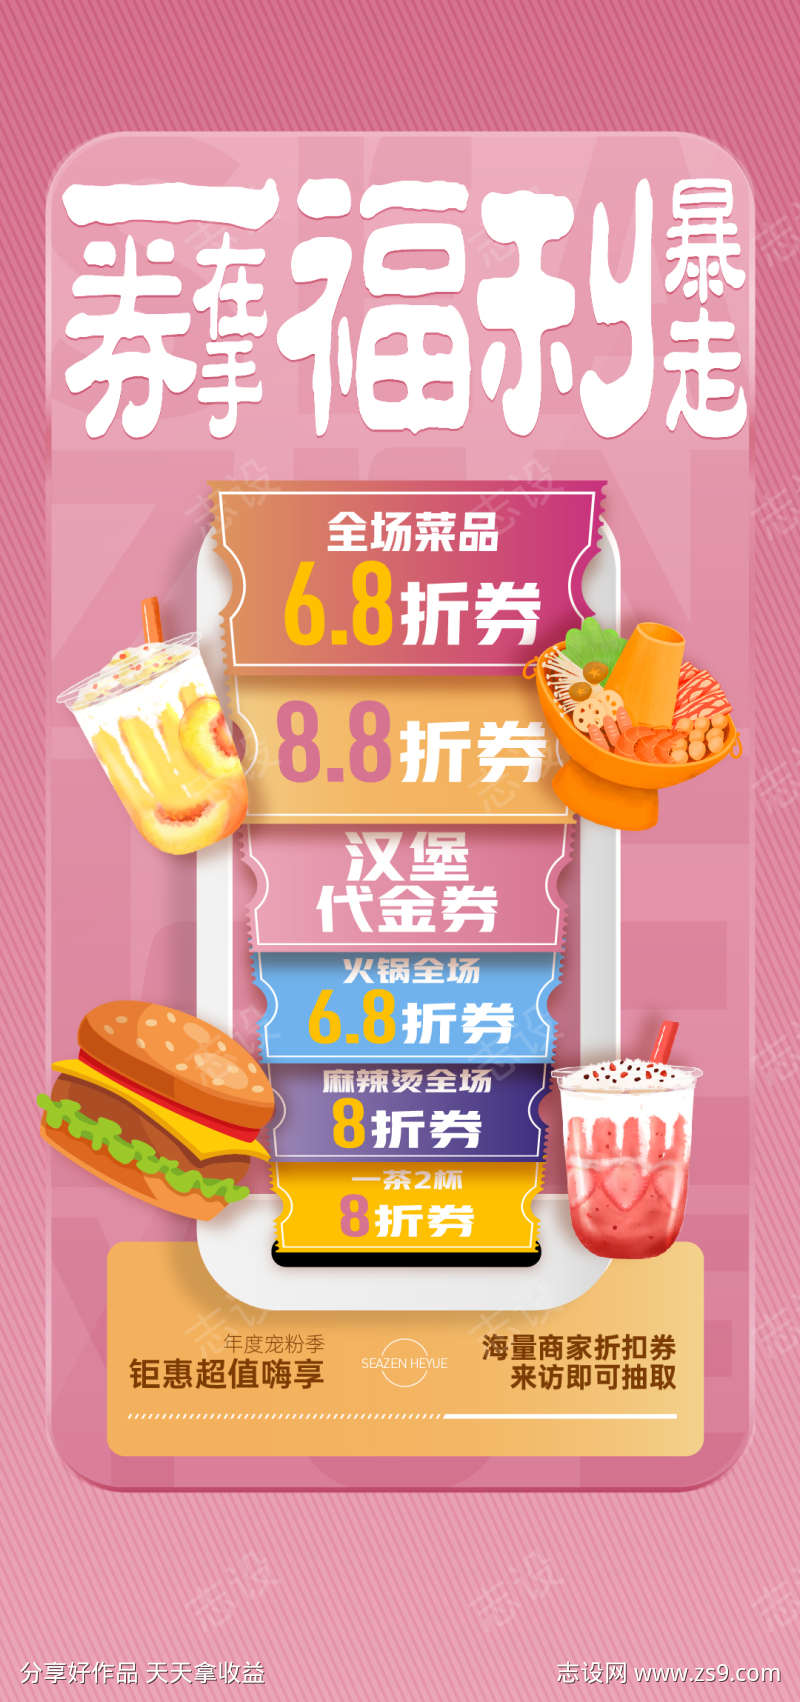 美食汉堡奶茶火锅福利海报微信稿单图价值稿